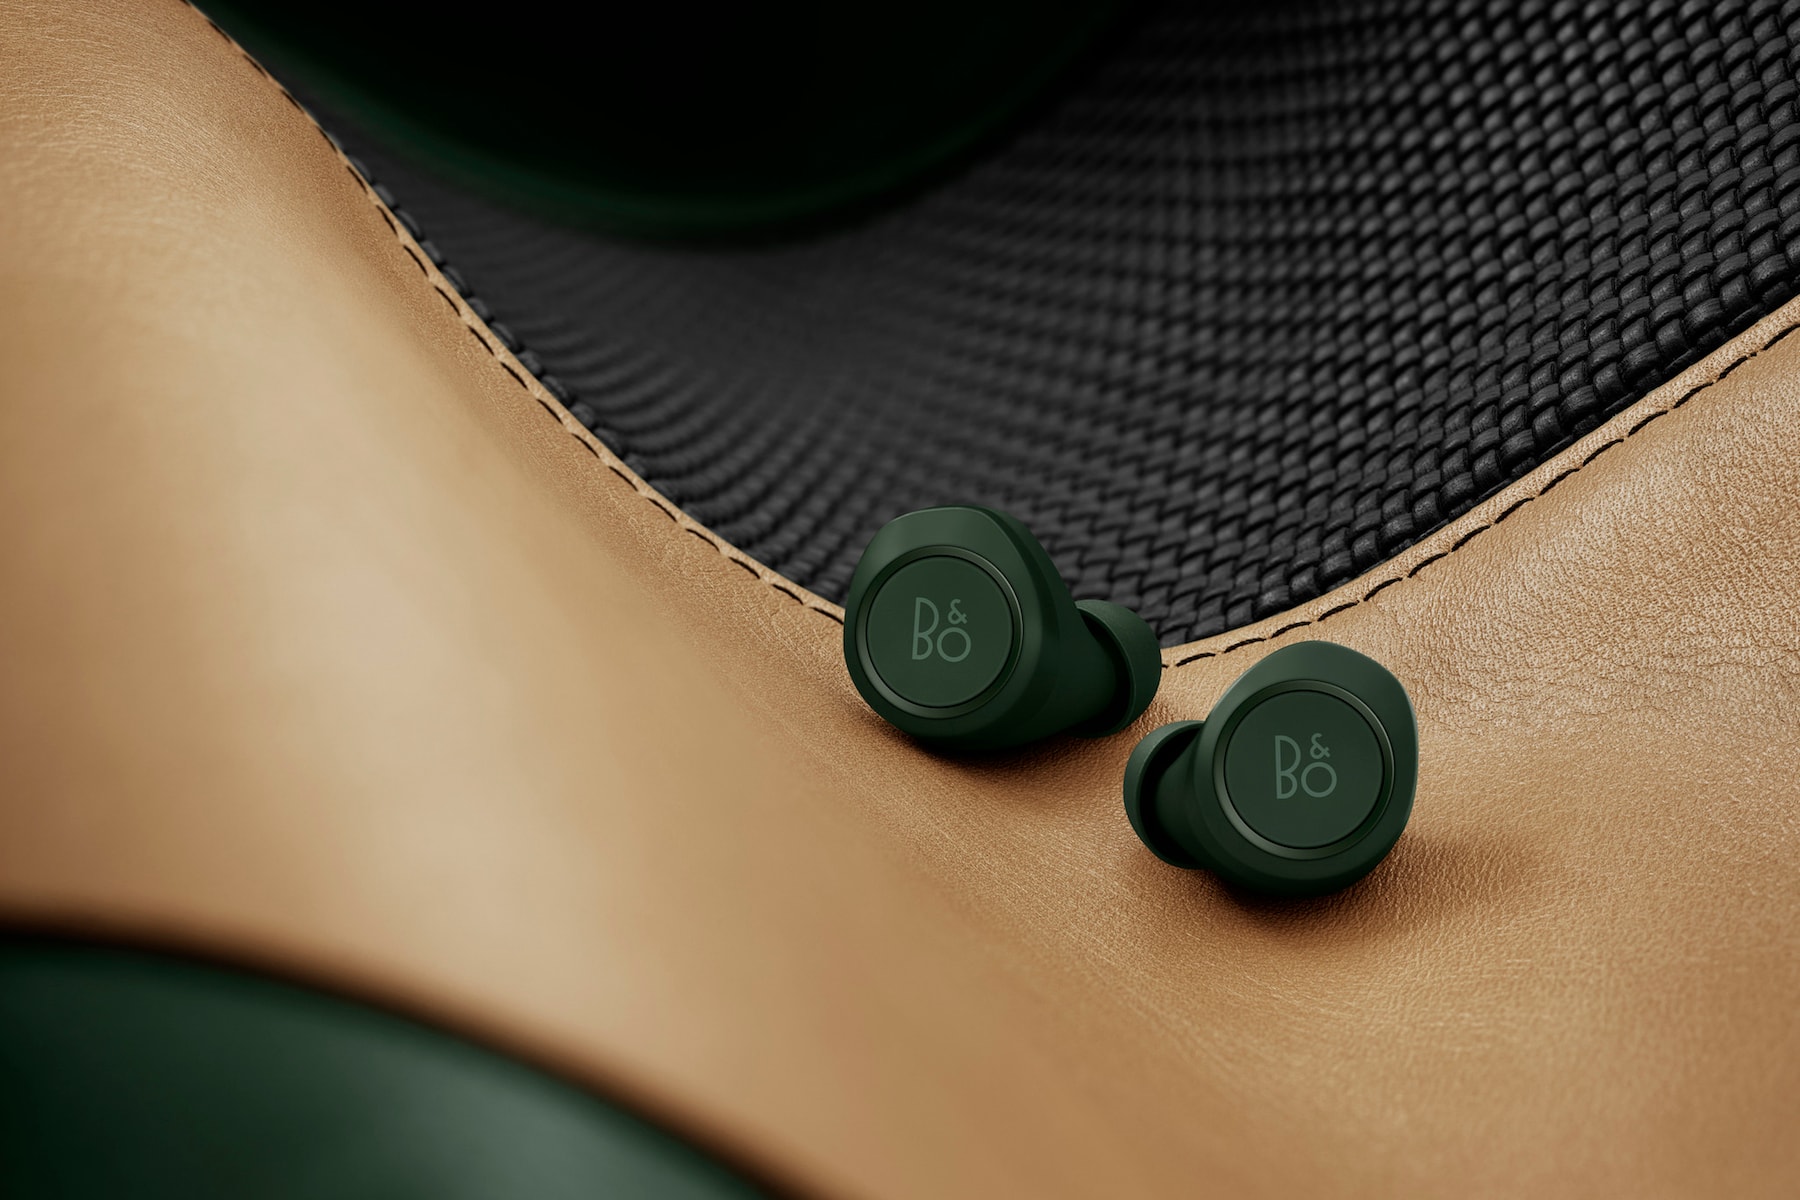 B&O PLAY 為 Beoplay E8 無線耳機推出全新「賽車綠」限量版本